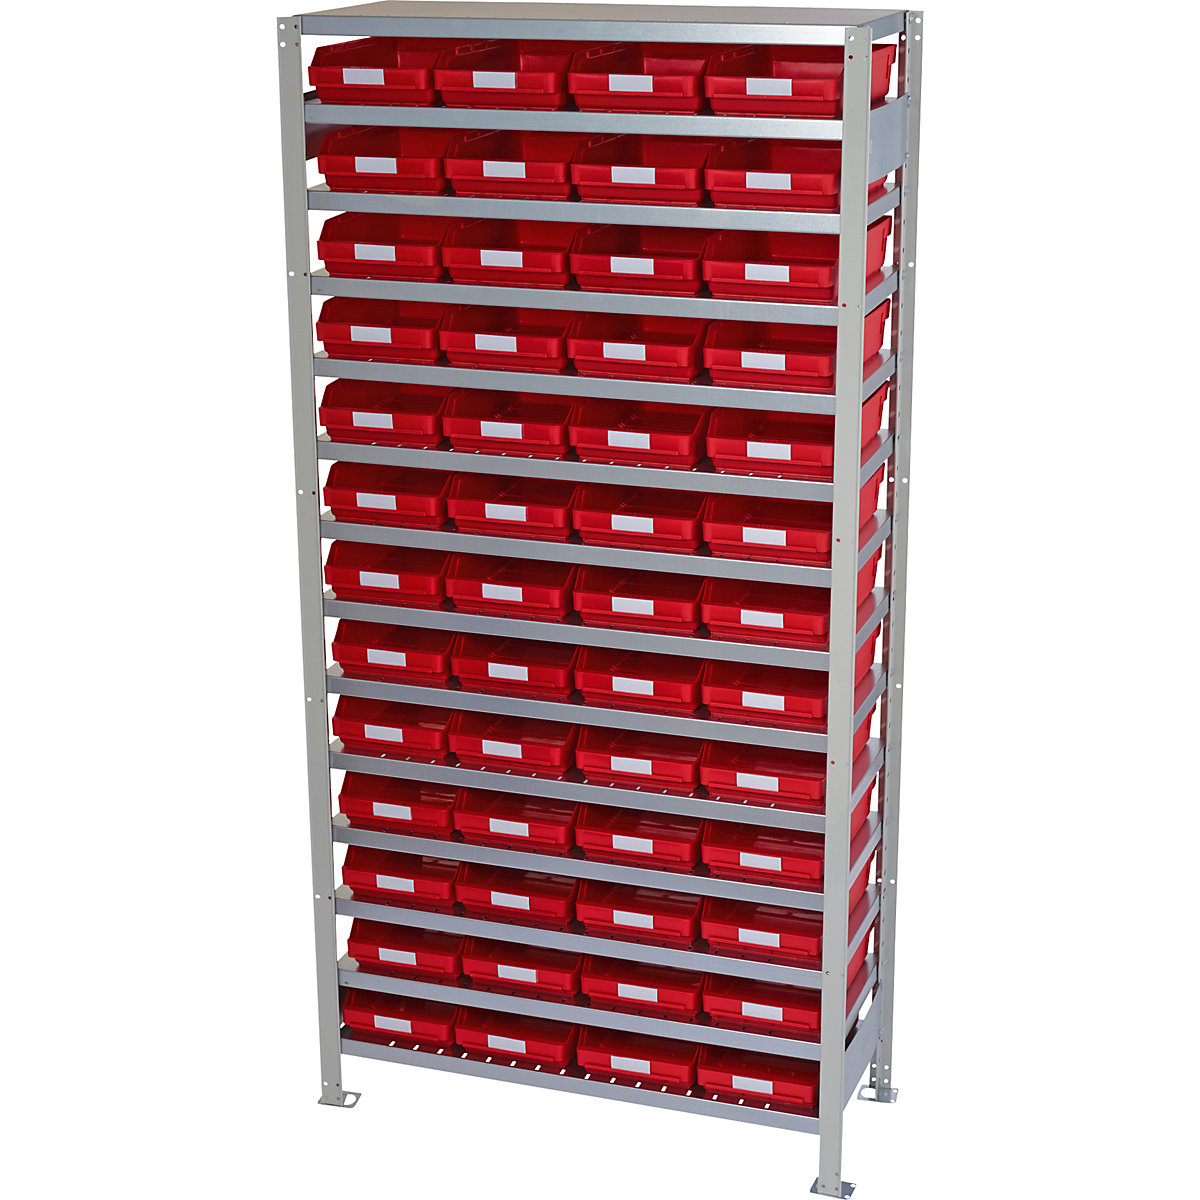 Összedugaszolós állvány dobozokkal – STEMO, állványmagasság 2100 mm, alapállvány, 300 mm mély, 52 piros doboz-6